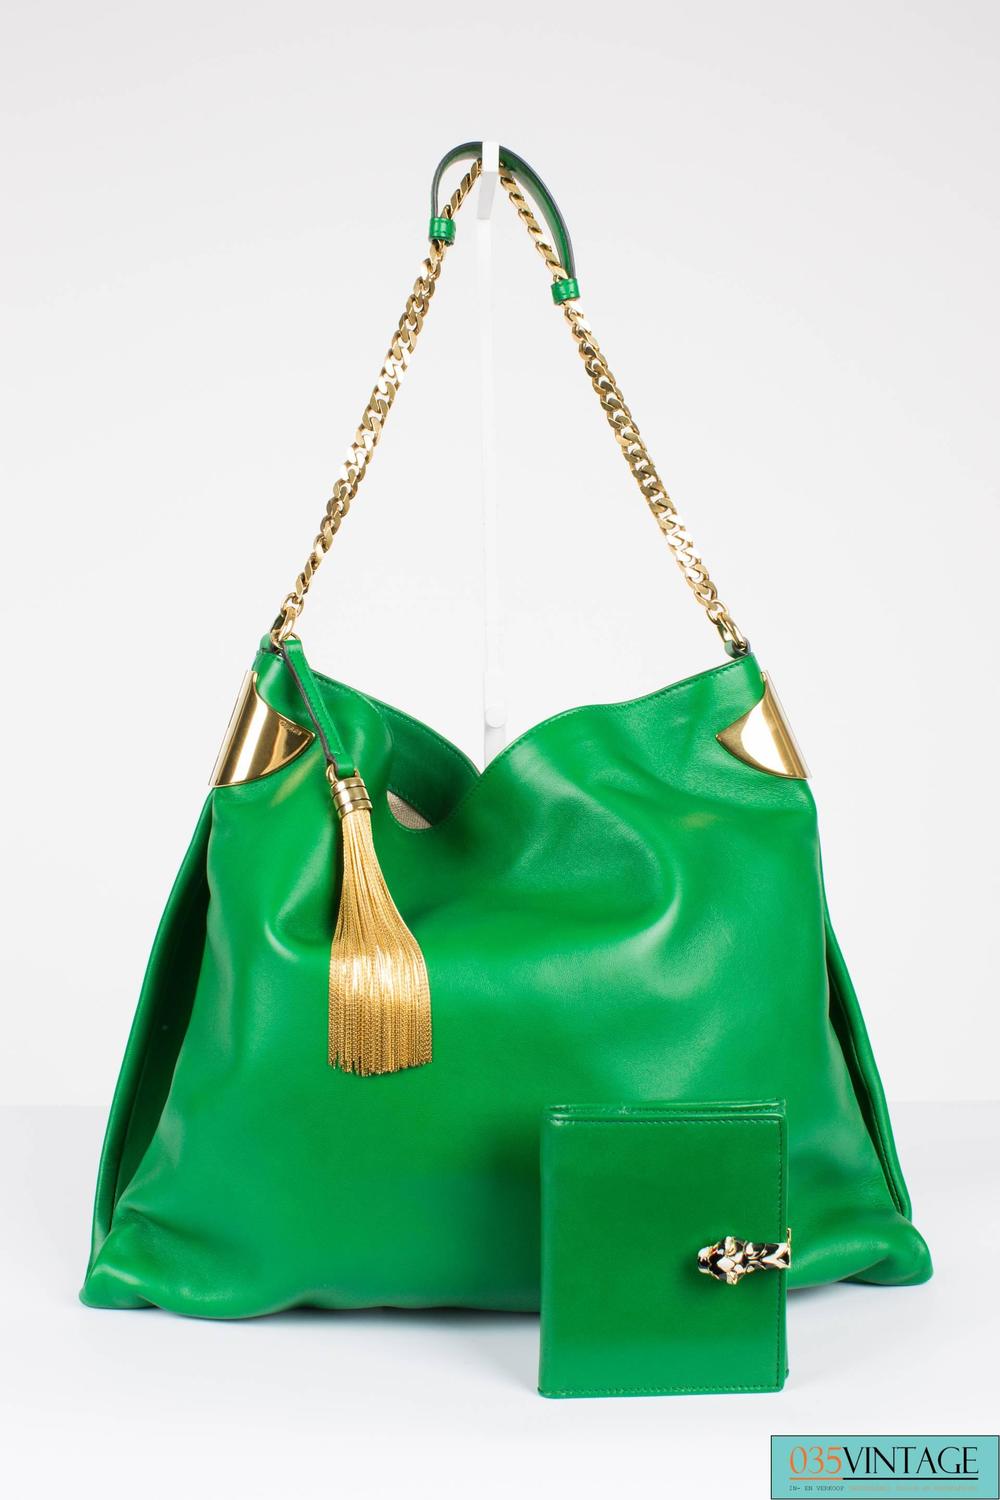 Gucci 1970 Medium Shoulder Bag - green leather/gold For Sale at 1stdibs